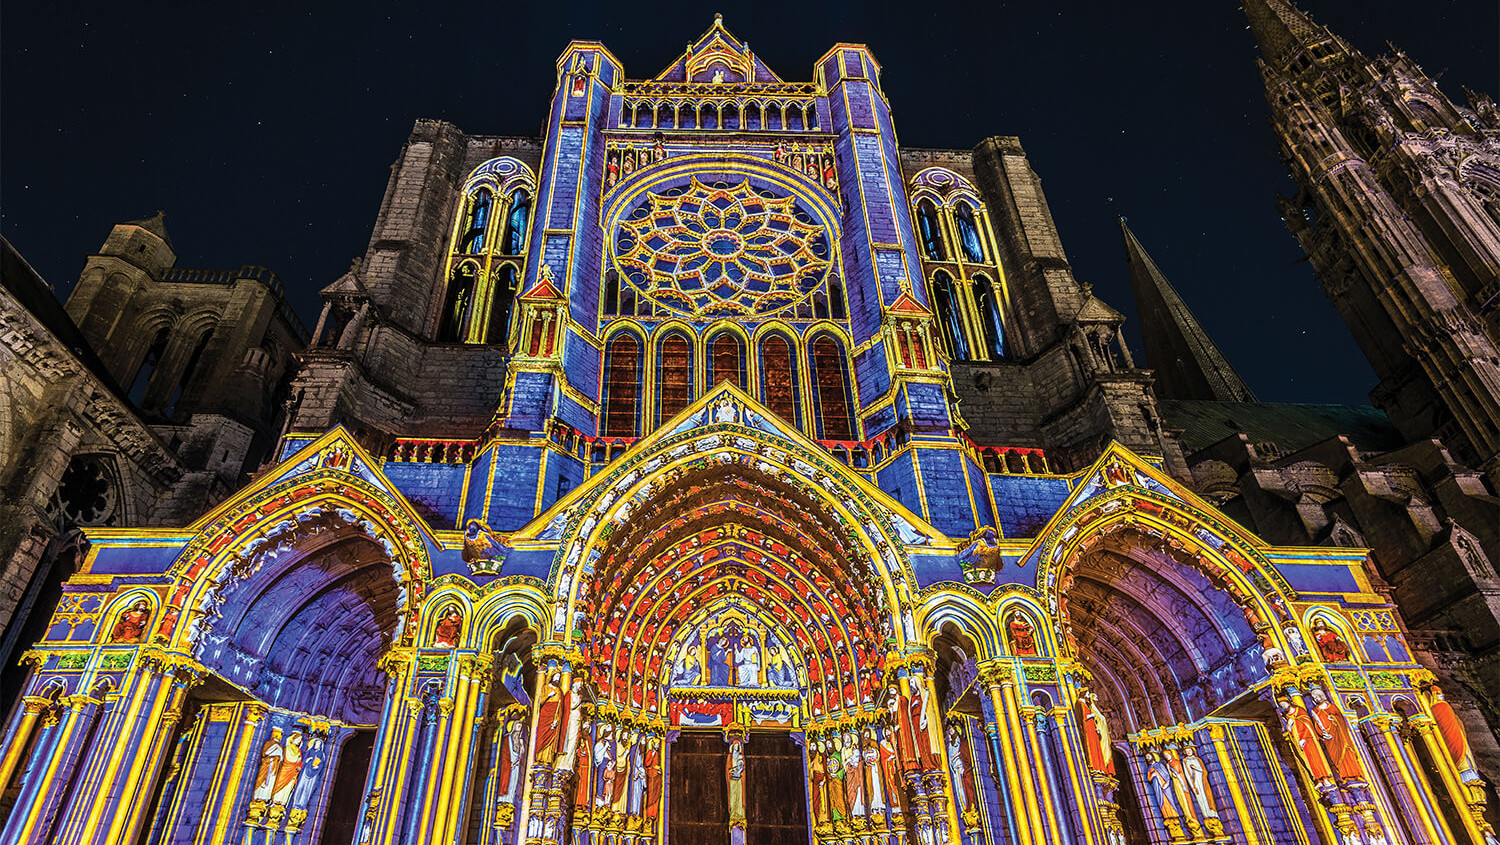 La cathédrale de Chartres illuminée lors de l'événement Chartres en lumières